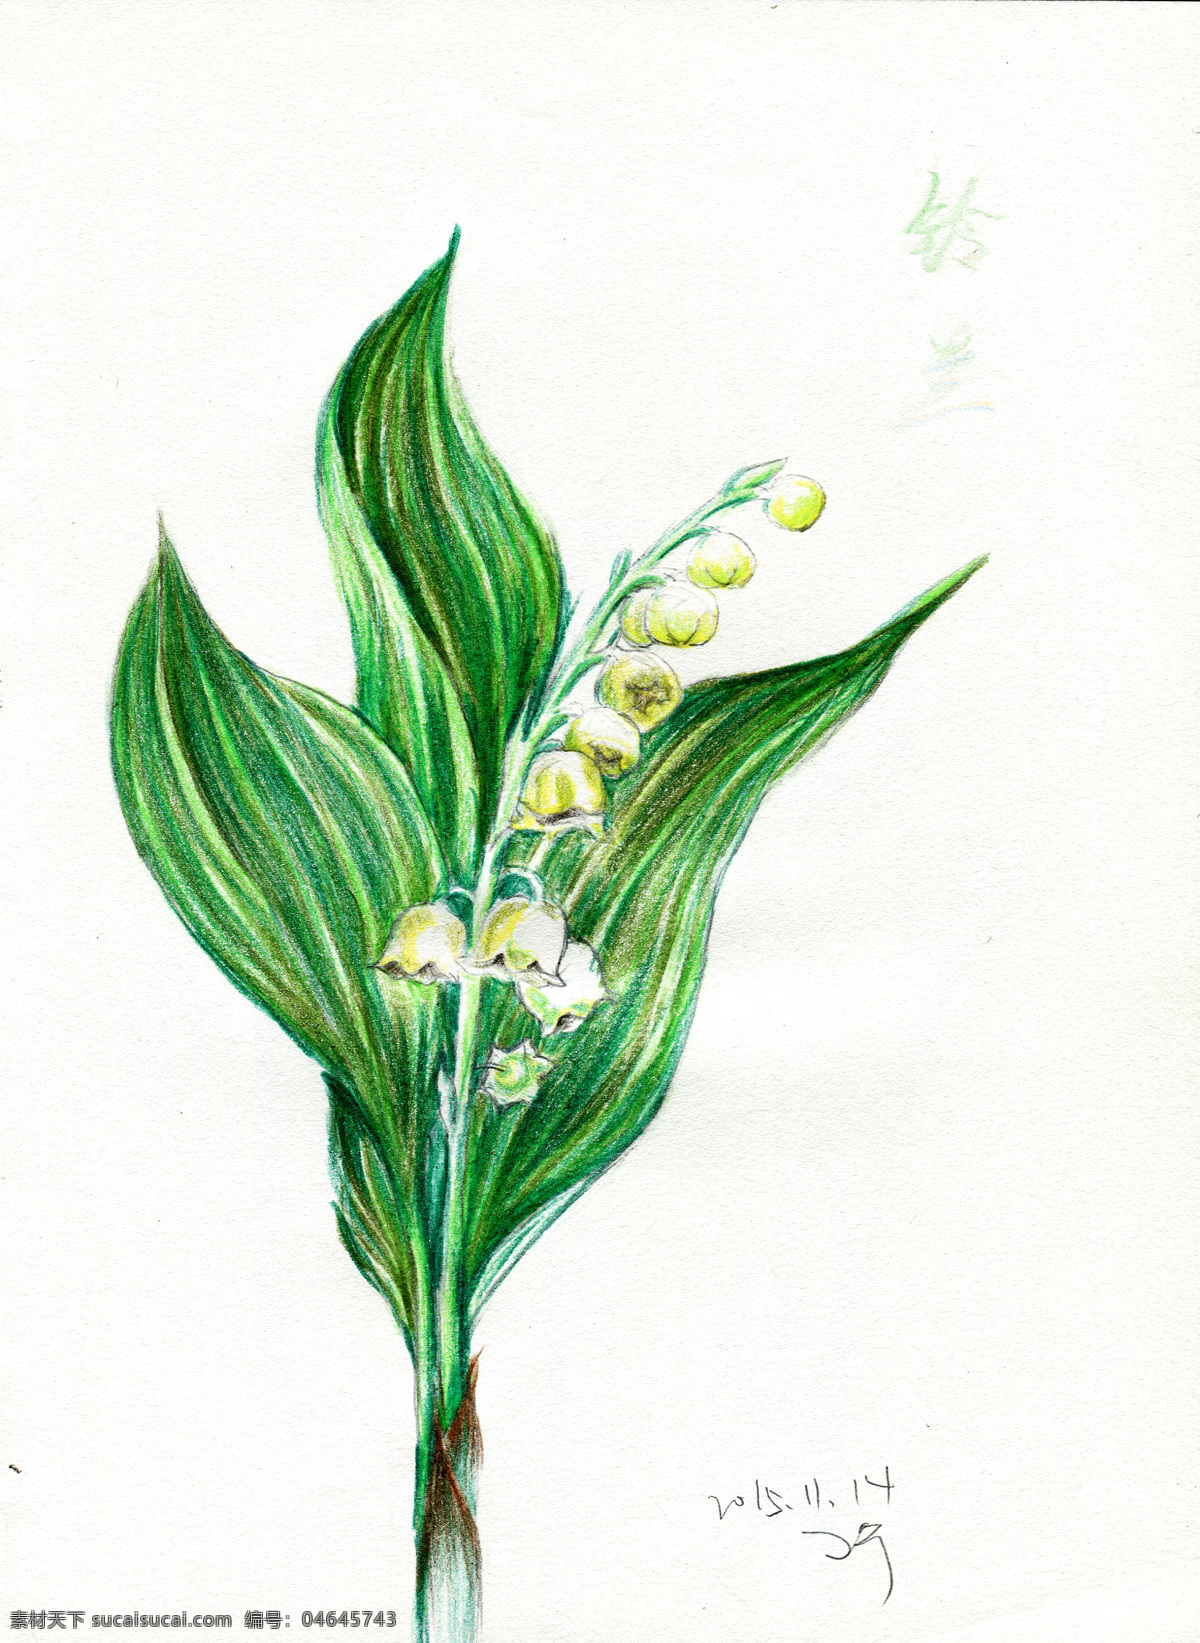 彩铅笔 手绘 花朵 铃兰 花 铃铛花 花卉 彩 铅笔 生物世界 花草